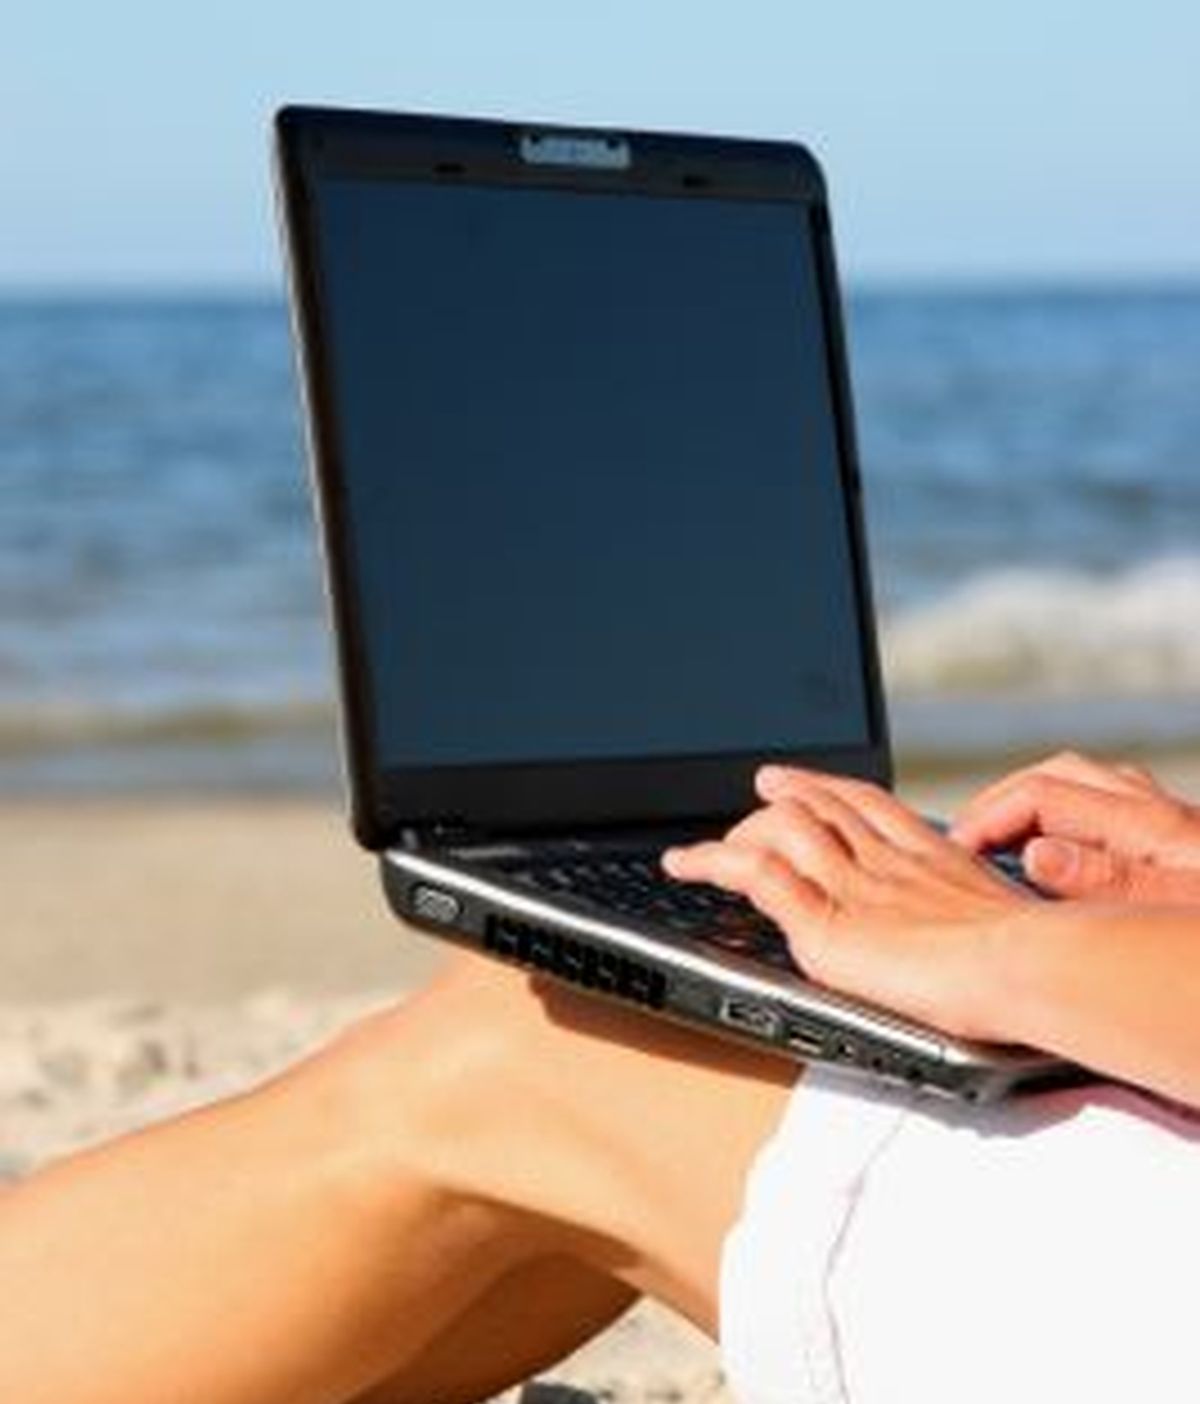 El uso frecuente del ordenador durante el periodo estivo para relacionarnos y organizar nuestras vacaciones provoca que los ciberdelincuentes se aprovechen.